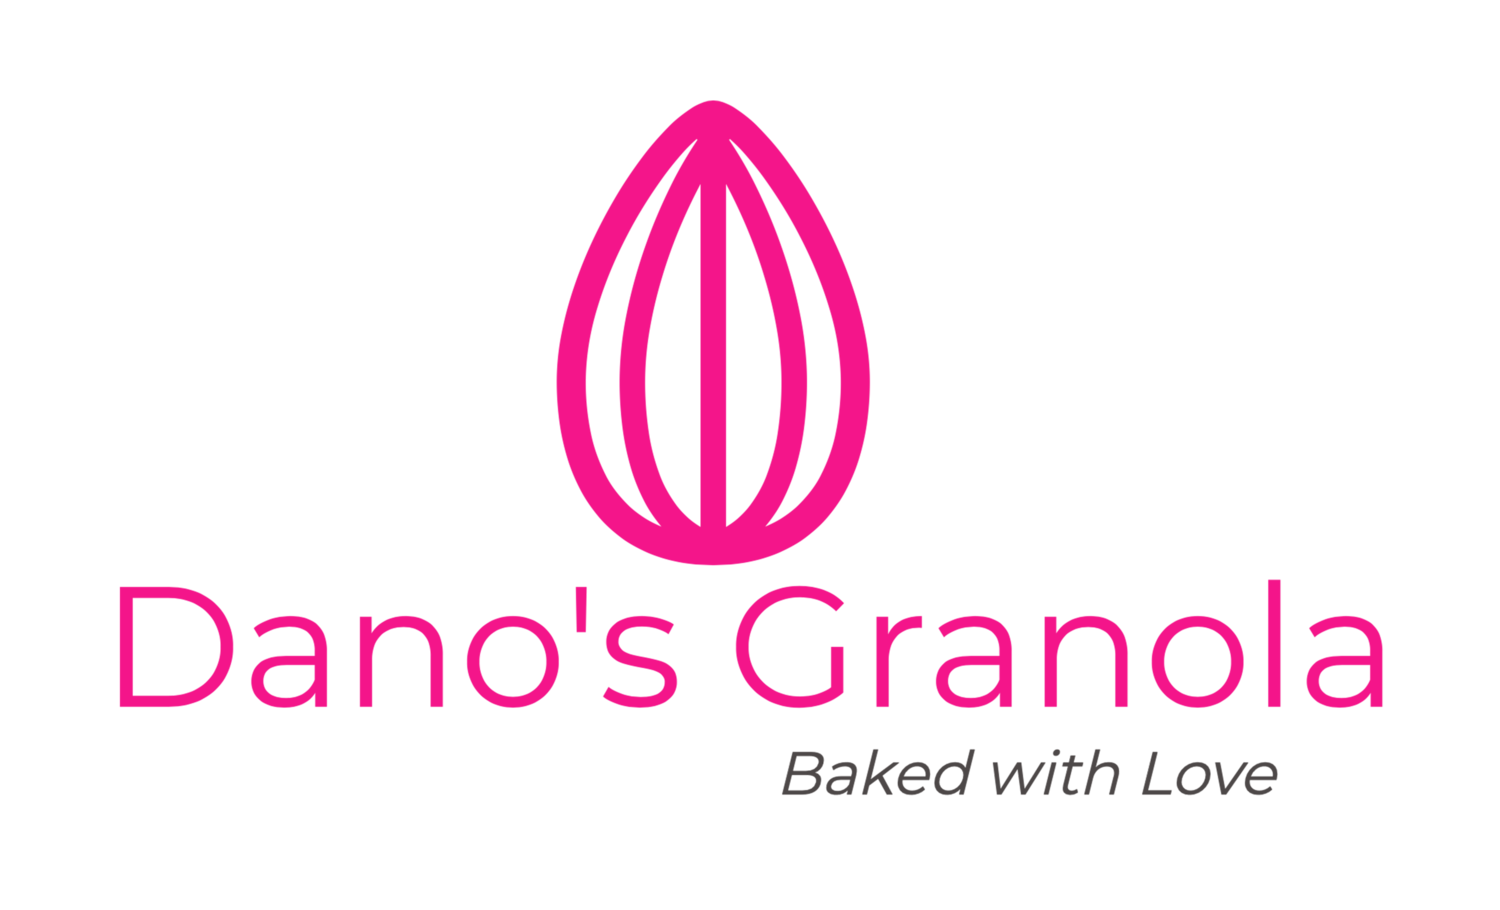 Dano's Granola